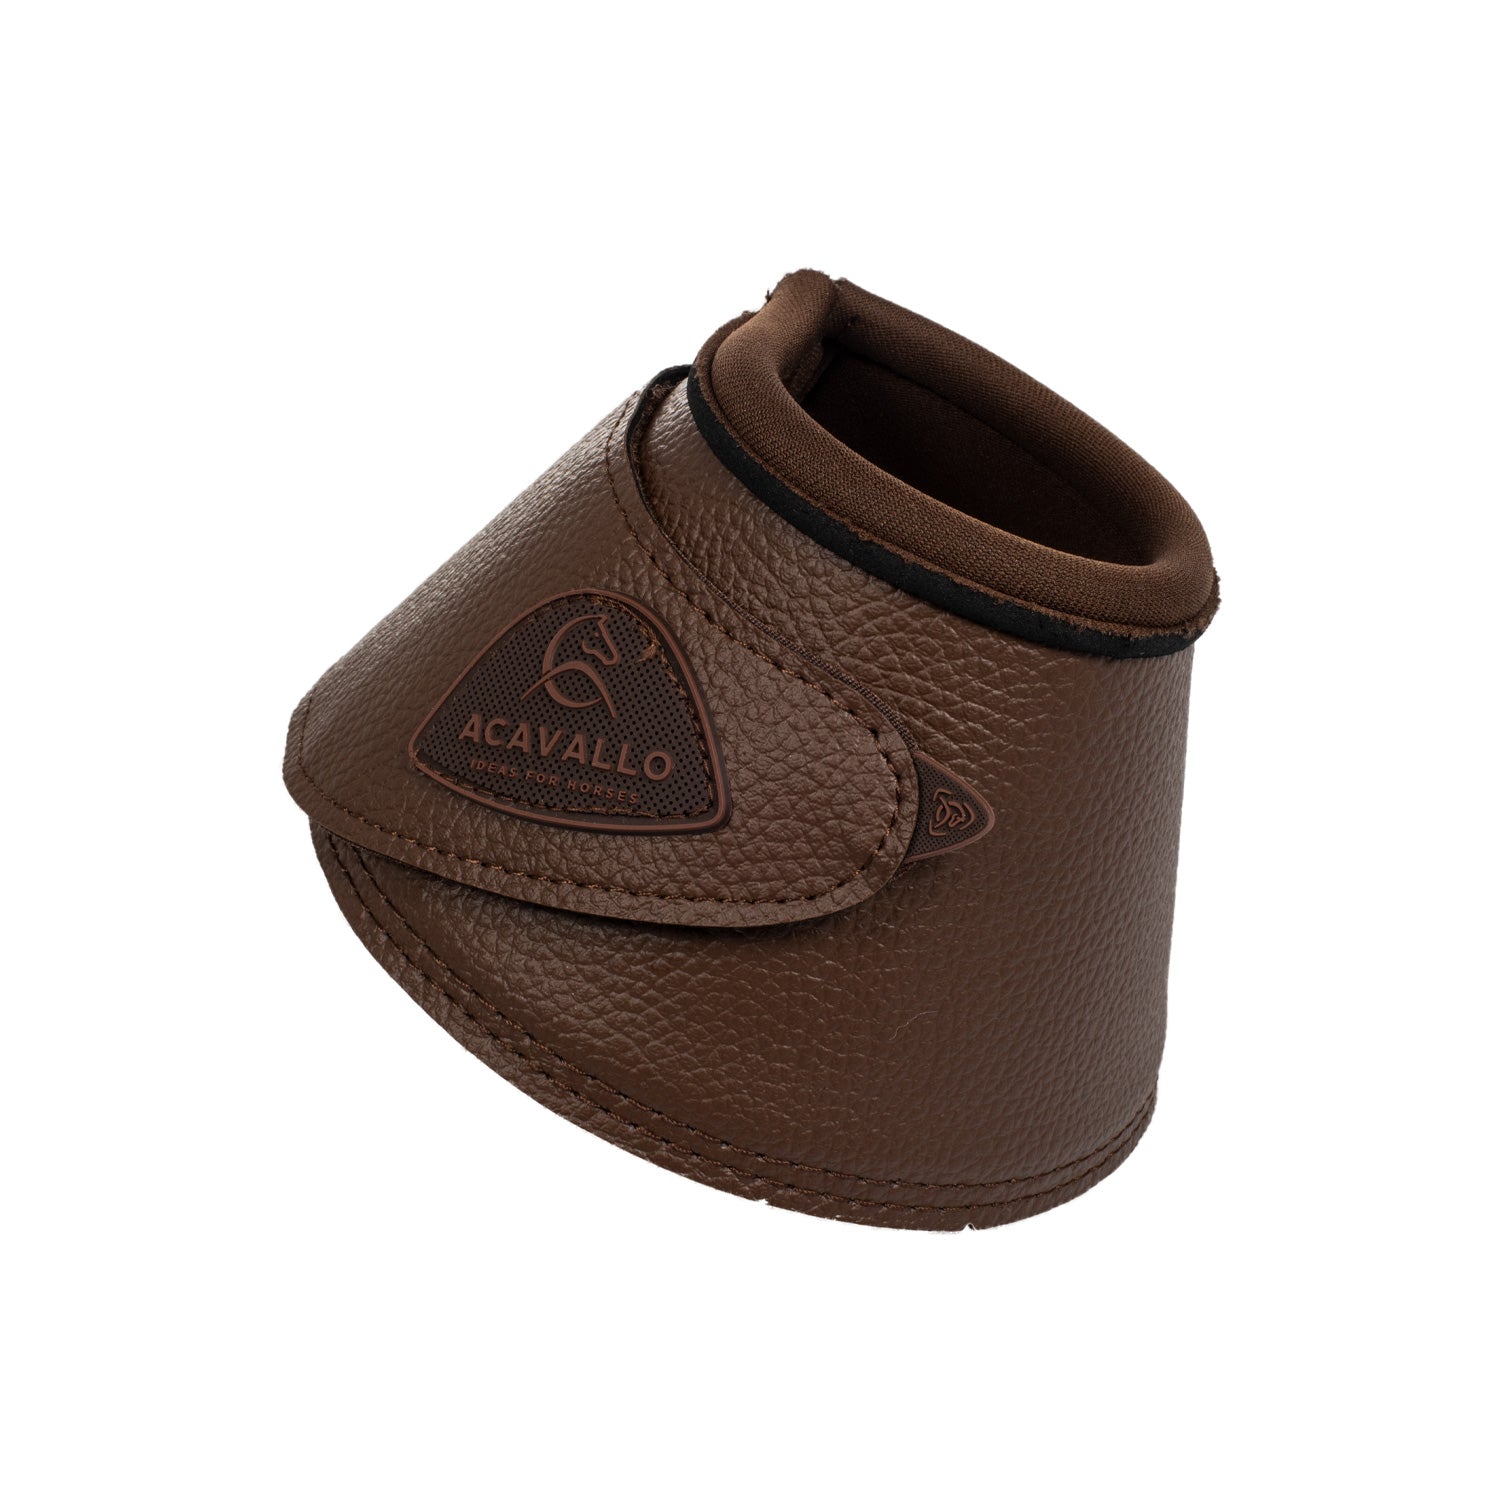 Gamaschen Eco leather bell boots with velcro fastening - Reitstiefel Kandel - Dein Reitshop